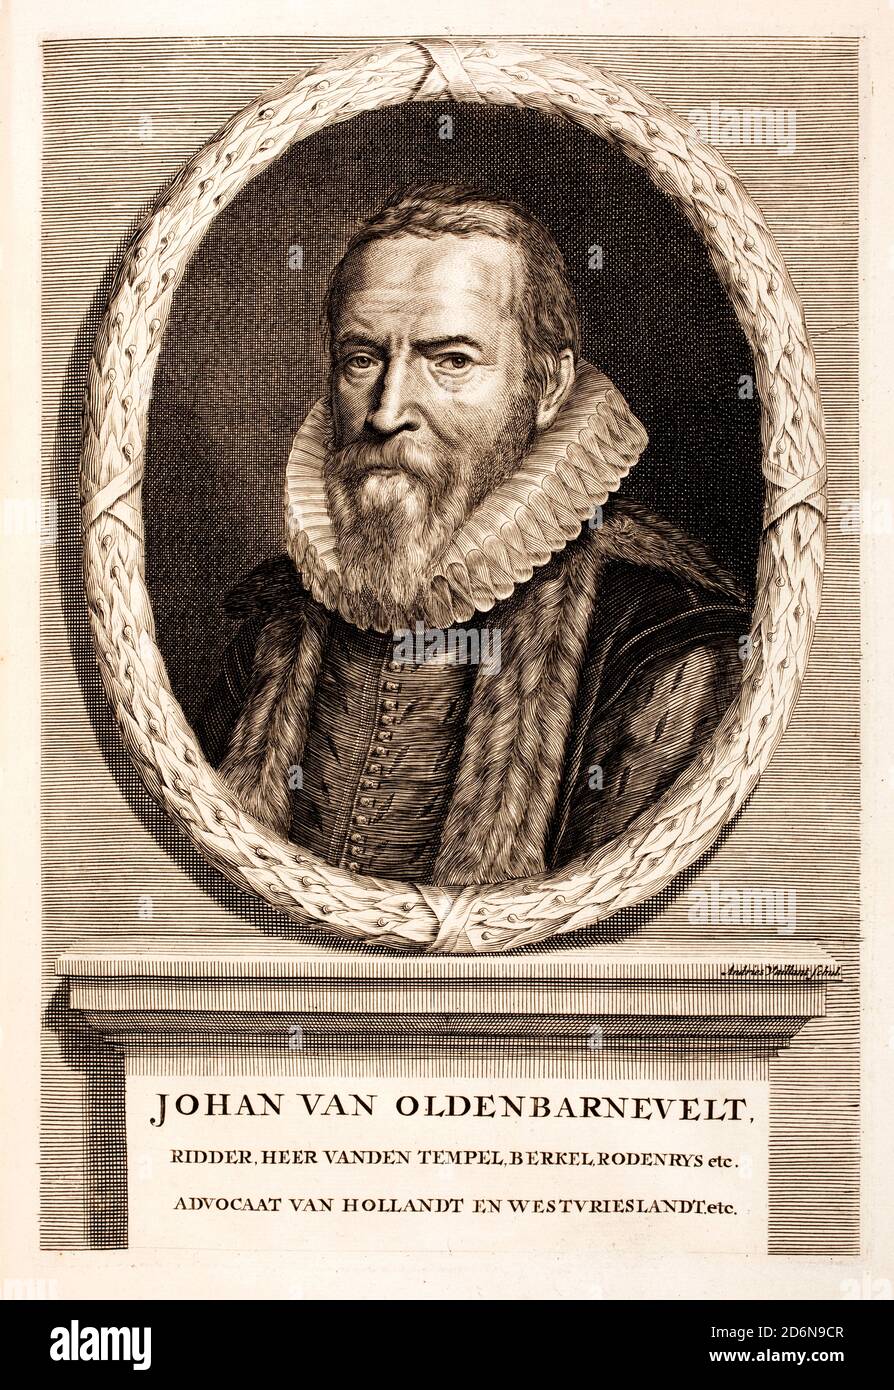 Johan van Oldenbarnevelt, el fundador de la Compañía Holandesa de las Indias Orientales. La "United East India Company", o "United East Indies Company" (también conocida por la abreviatura "VOC" en holandés) (1547 – 1619) estadista holandés que desempeñó un papel importante en la lucha holandesa por la independencia de España. Foto de stock